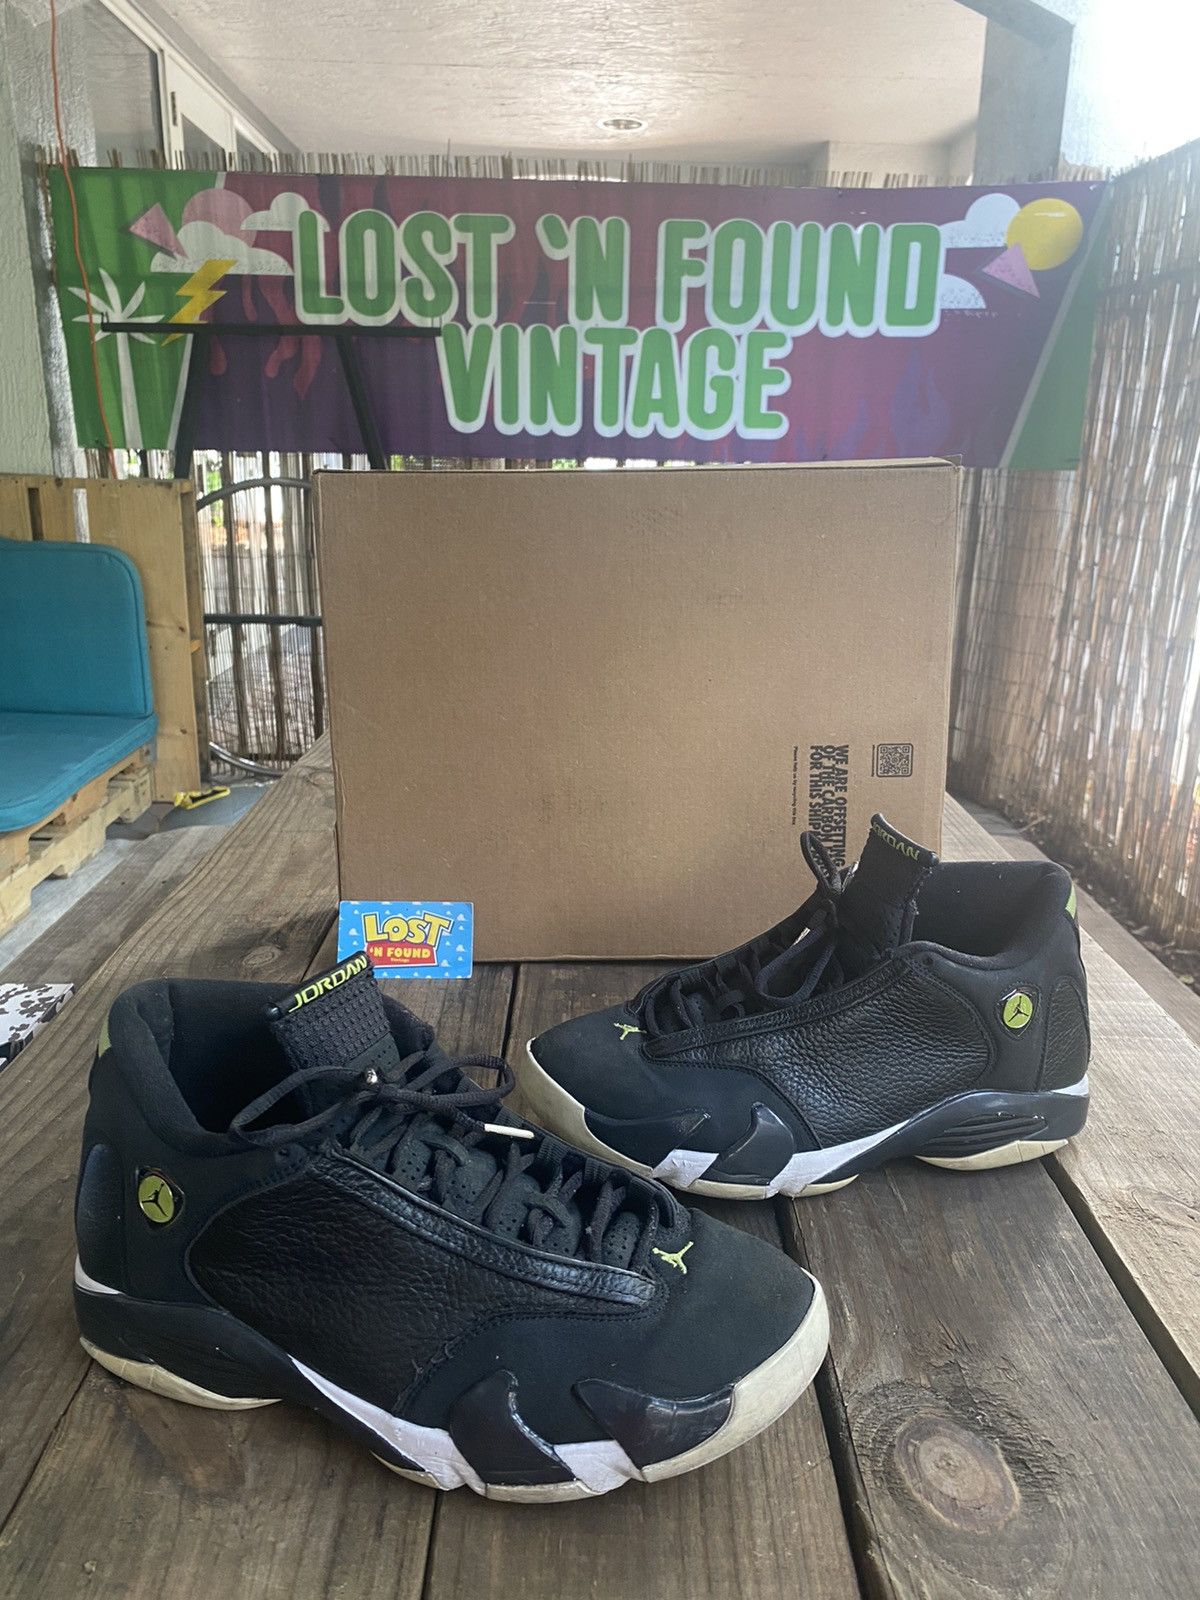 Pre-owned Jordan Brand 2016 Retro Air Jordan 14 Indiglo Shoes In Black